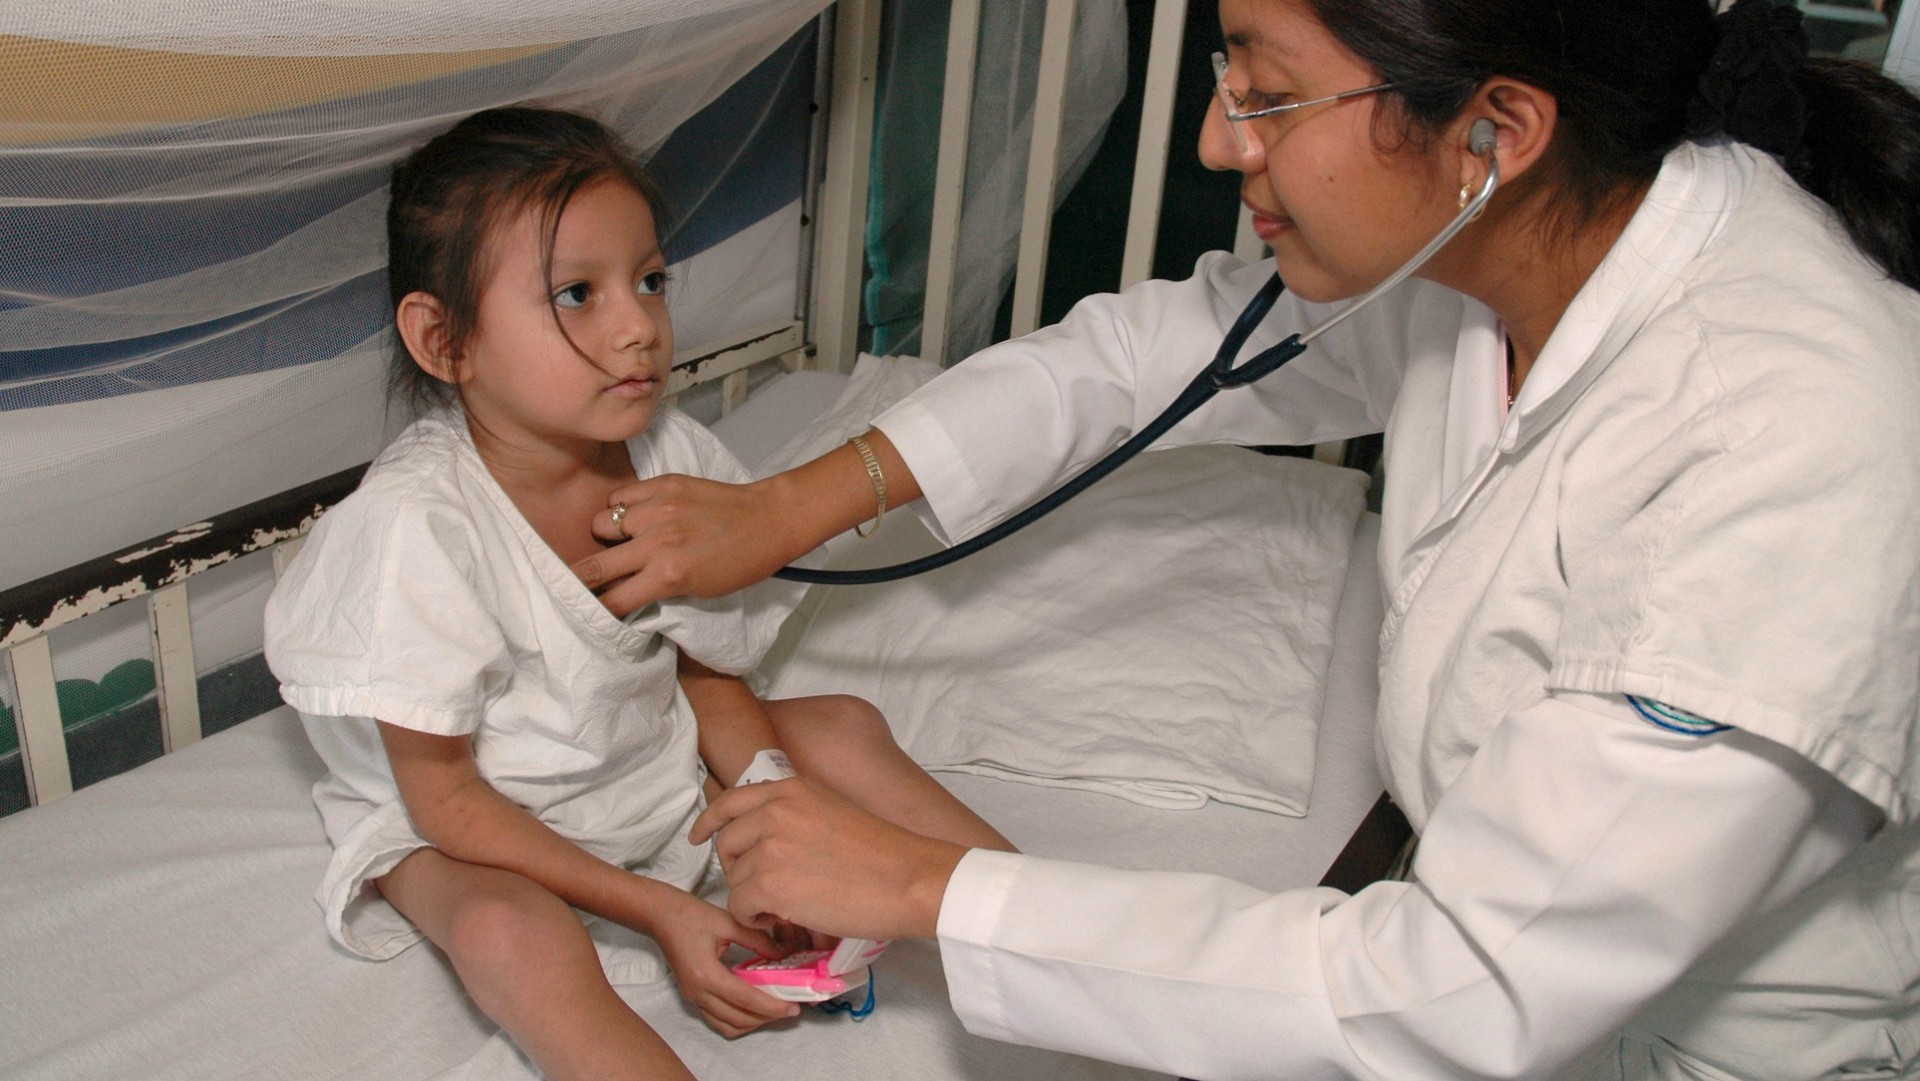 L'hôpital pédiatrique Federico Gomez de Mexico soigne de nombreux enfants malades (Photo d'illustration: Pan American Health Organization/Flickr/CC BY-ND 2.0)